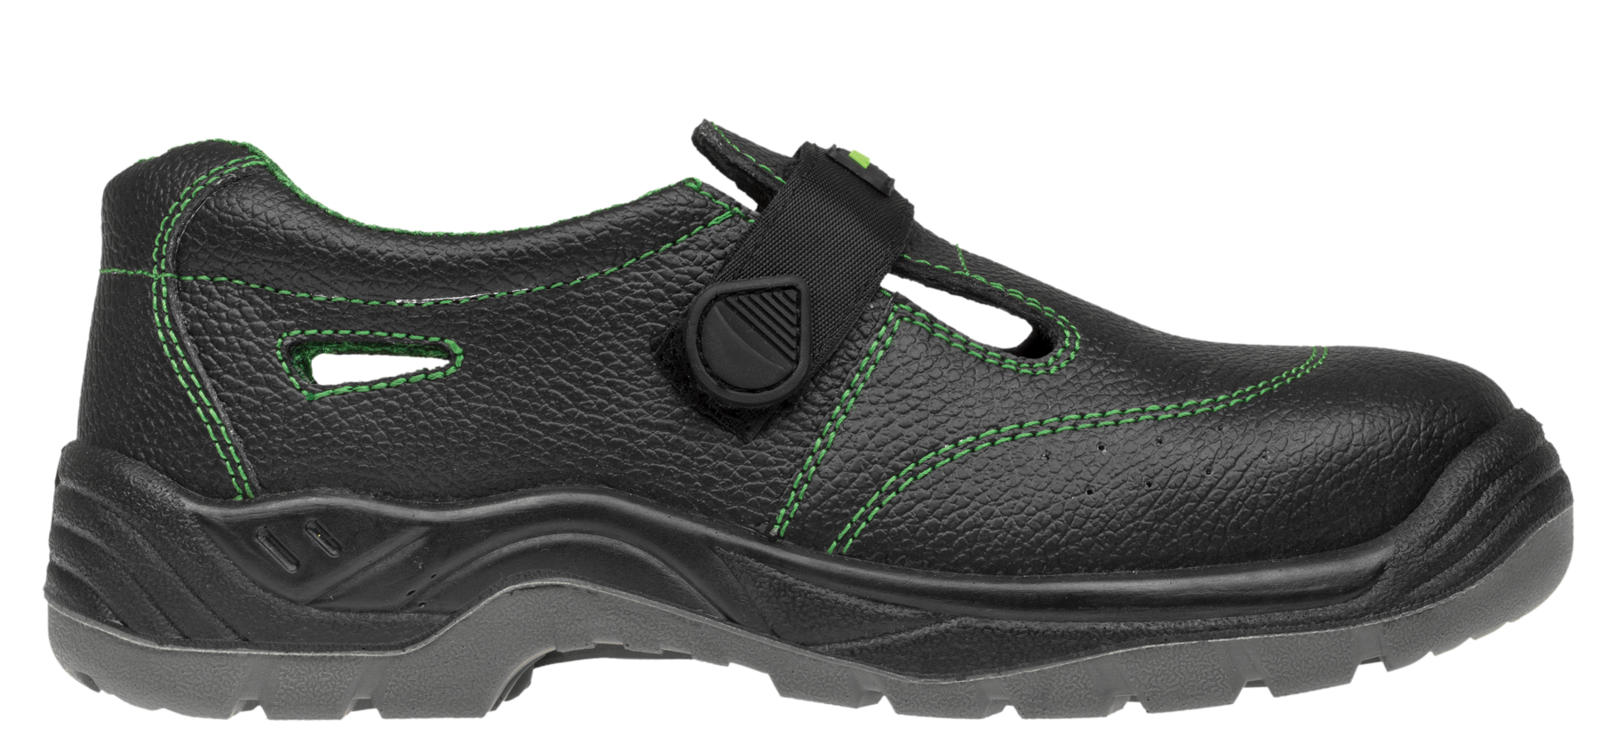 Bezpečnostné sandále Adamant Classic S1 - veľkosť: 49, farba: čierna